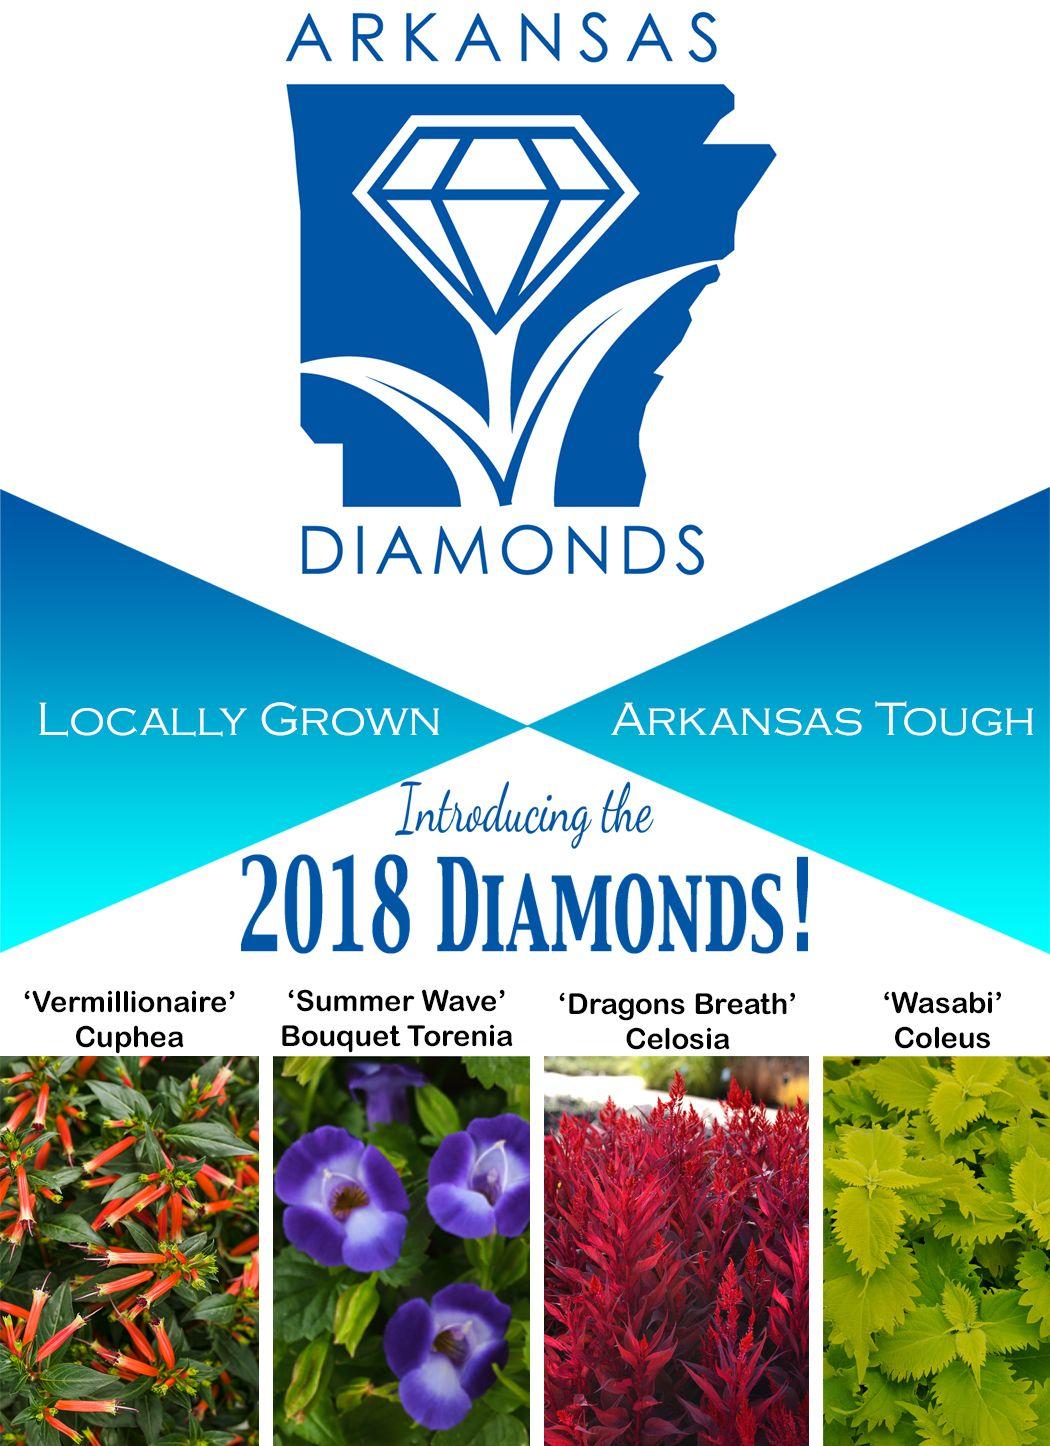 Arkansas Diamond Logo - Arkansas Diamonds - Plants - Arkansas Green Industry Association